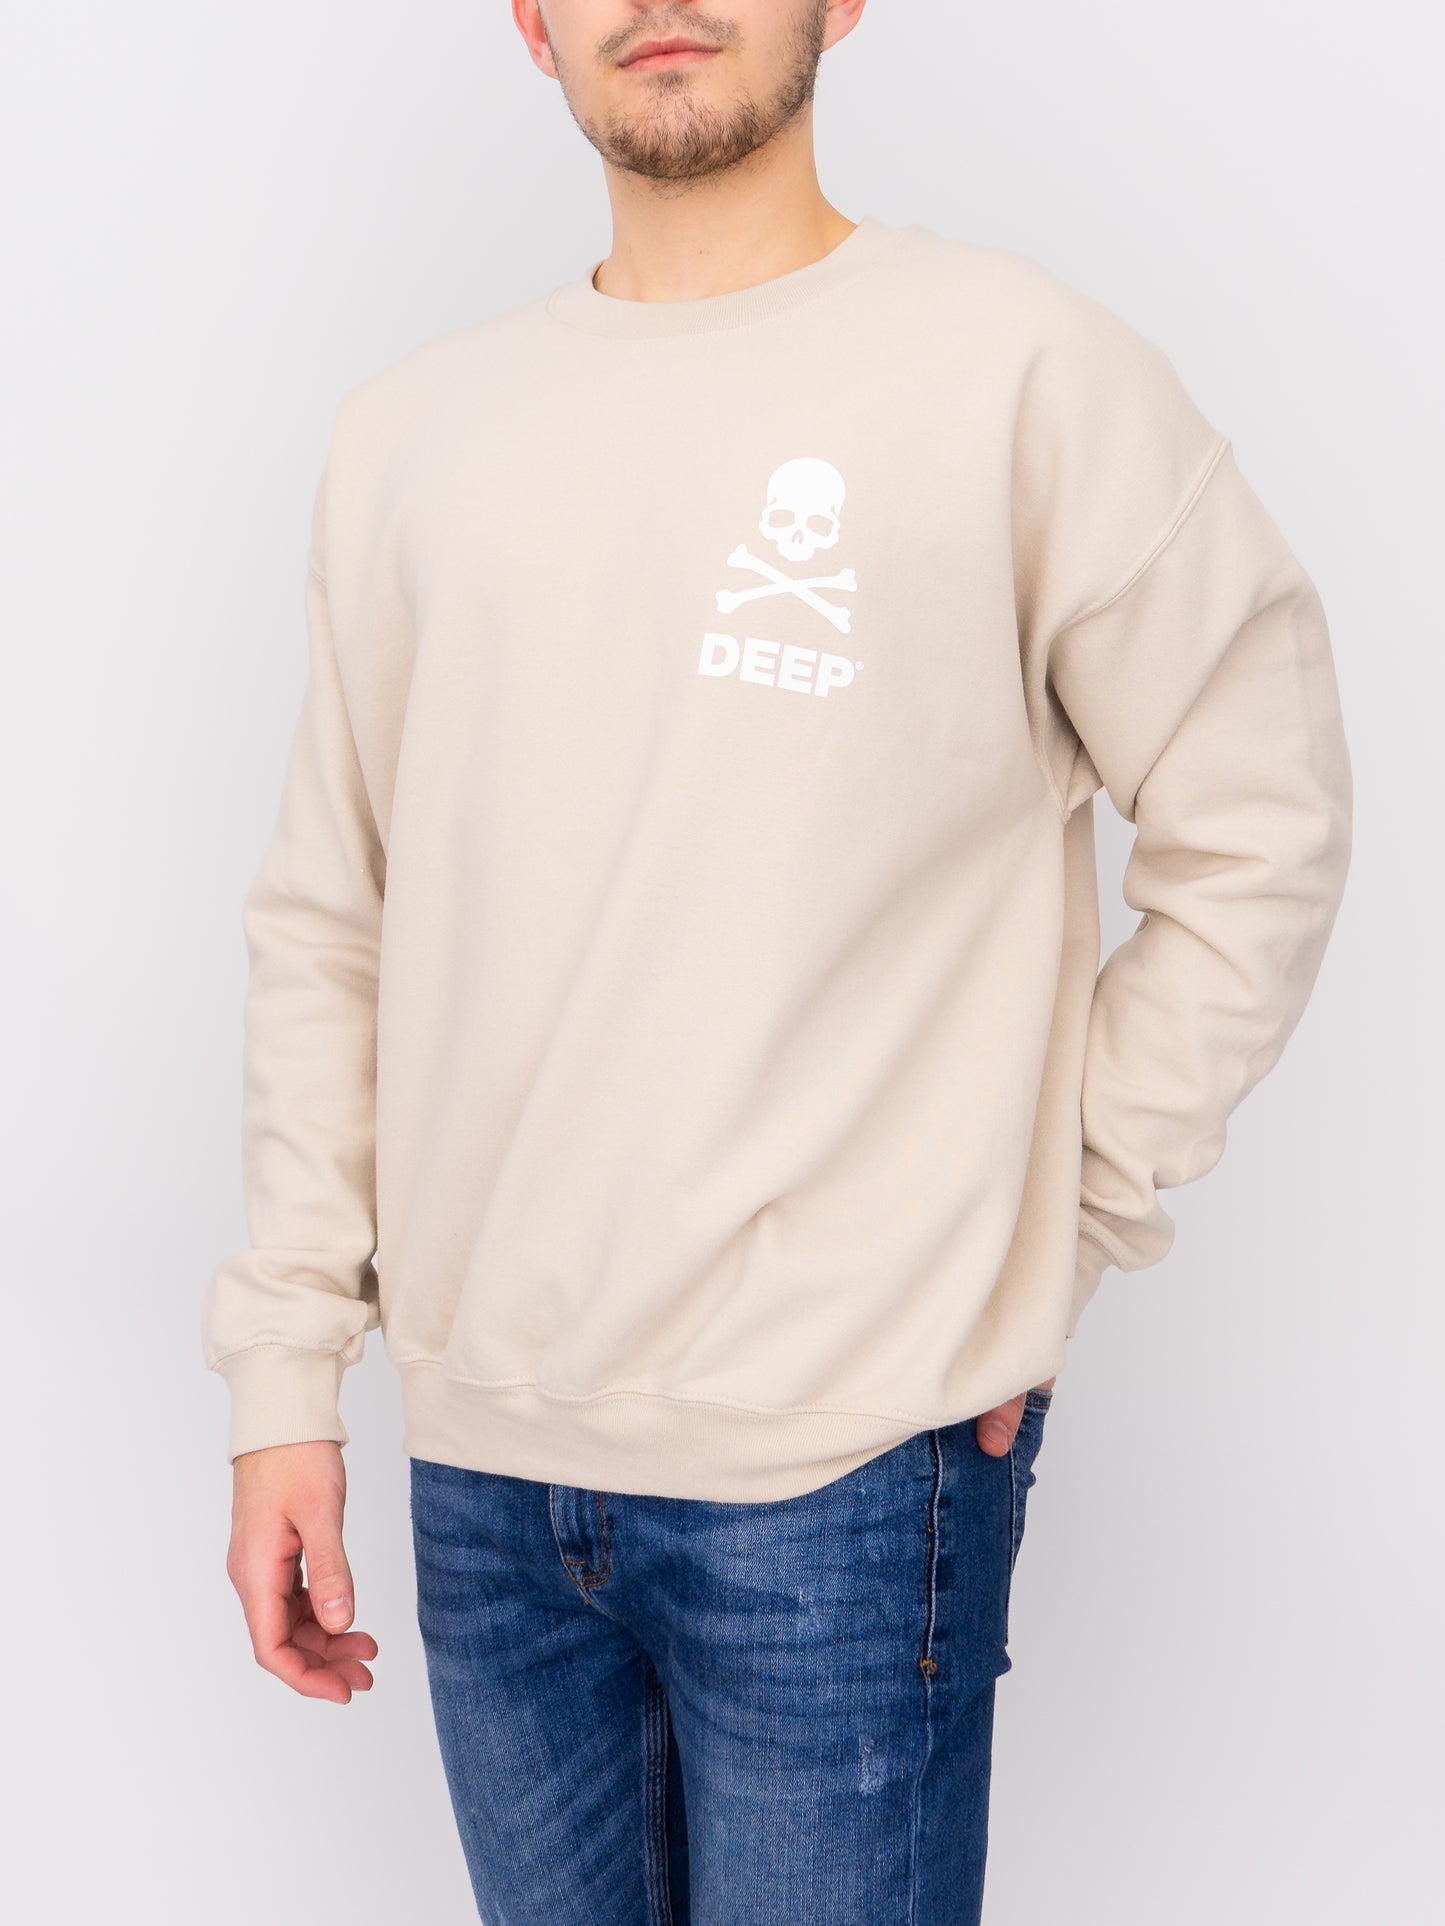 Crossbones Crew Neck Sweatshirt - Sand - DEEP Clothing